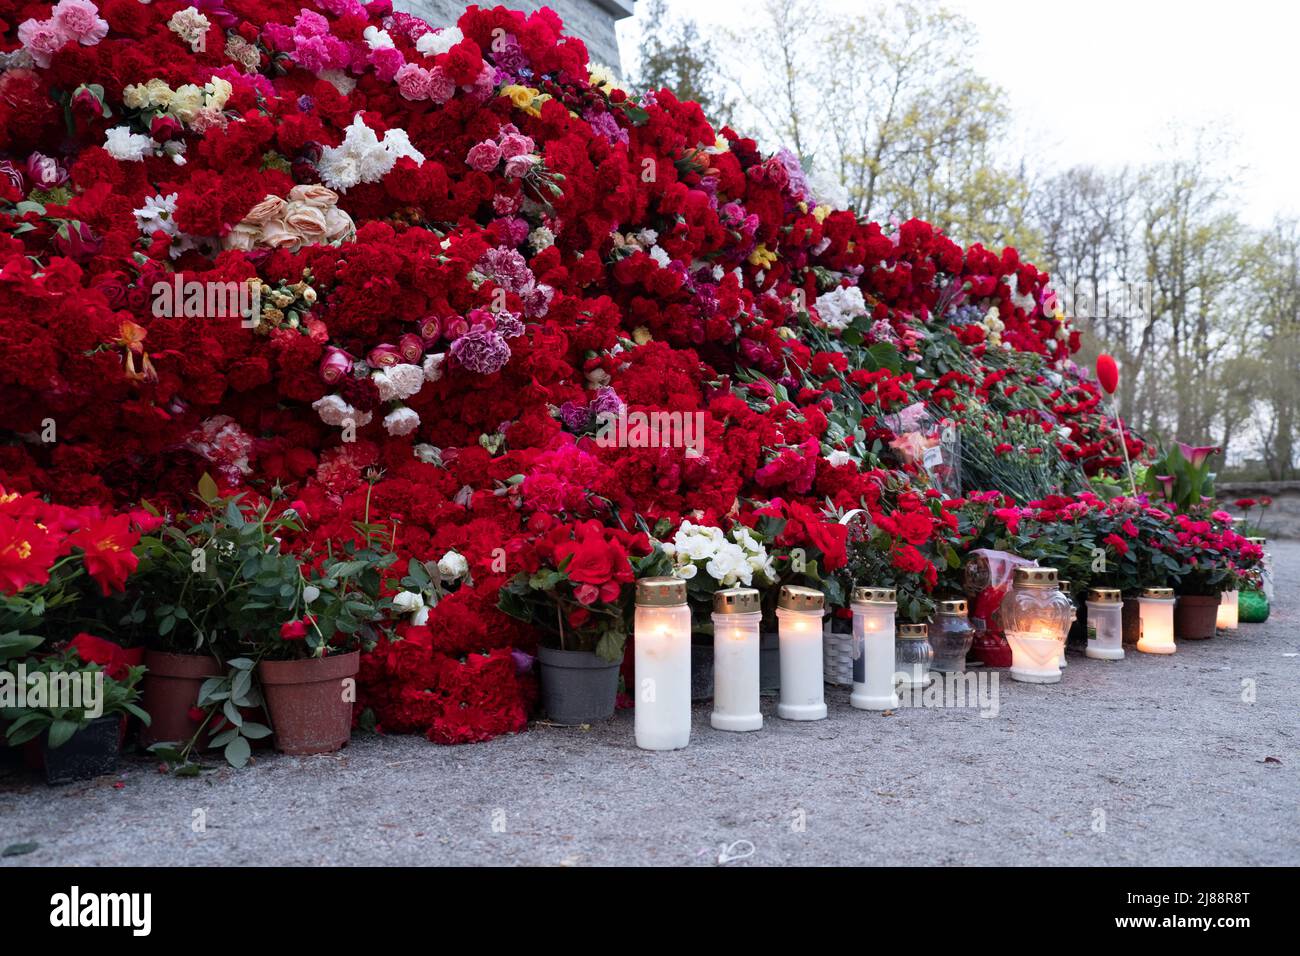 Énorme pile de fleurs rouges et de bougies. Les anciens combattants de l'Armée rouge célèbrent le jour de la victoire en apportant des fleurs de la nation rouge Banque D'Images